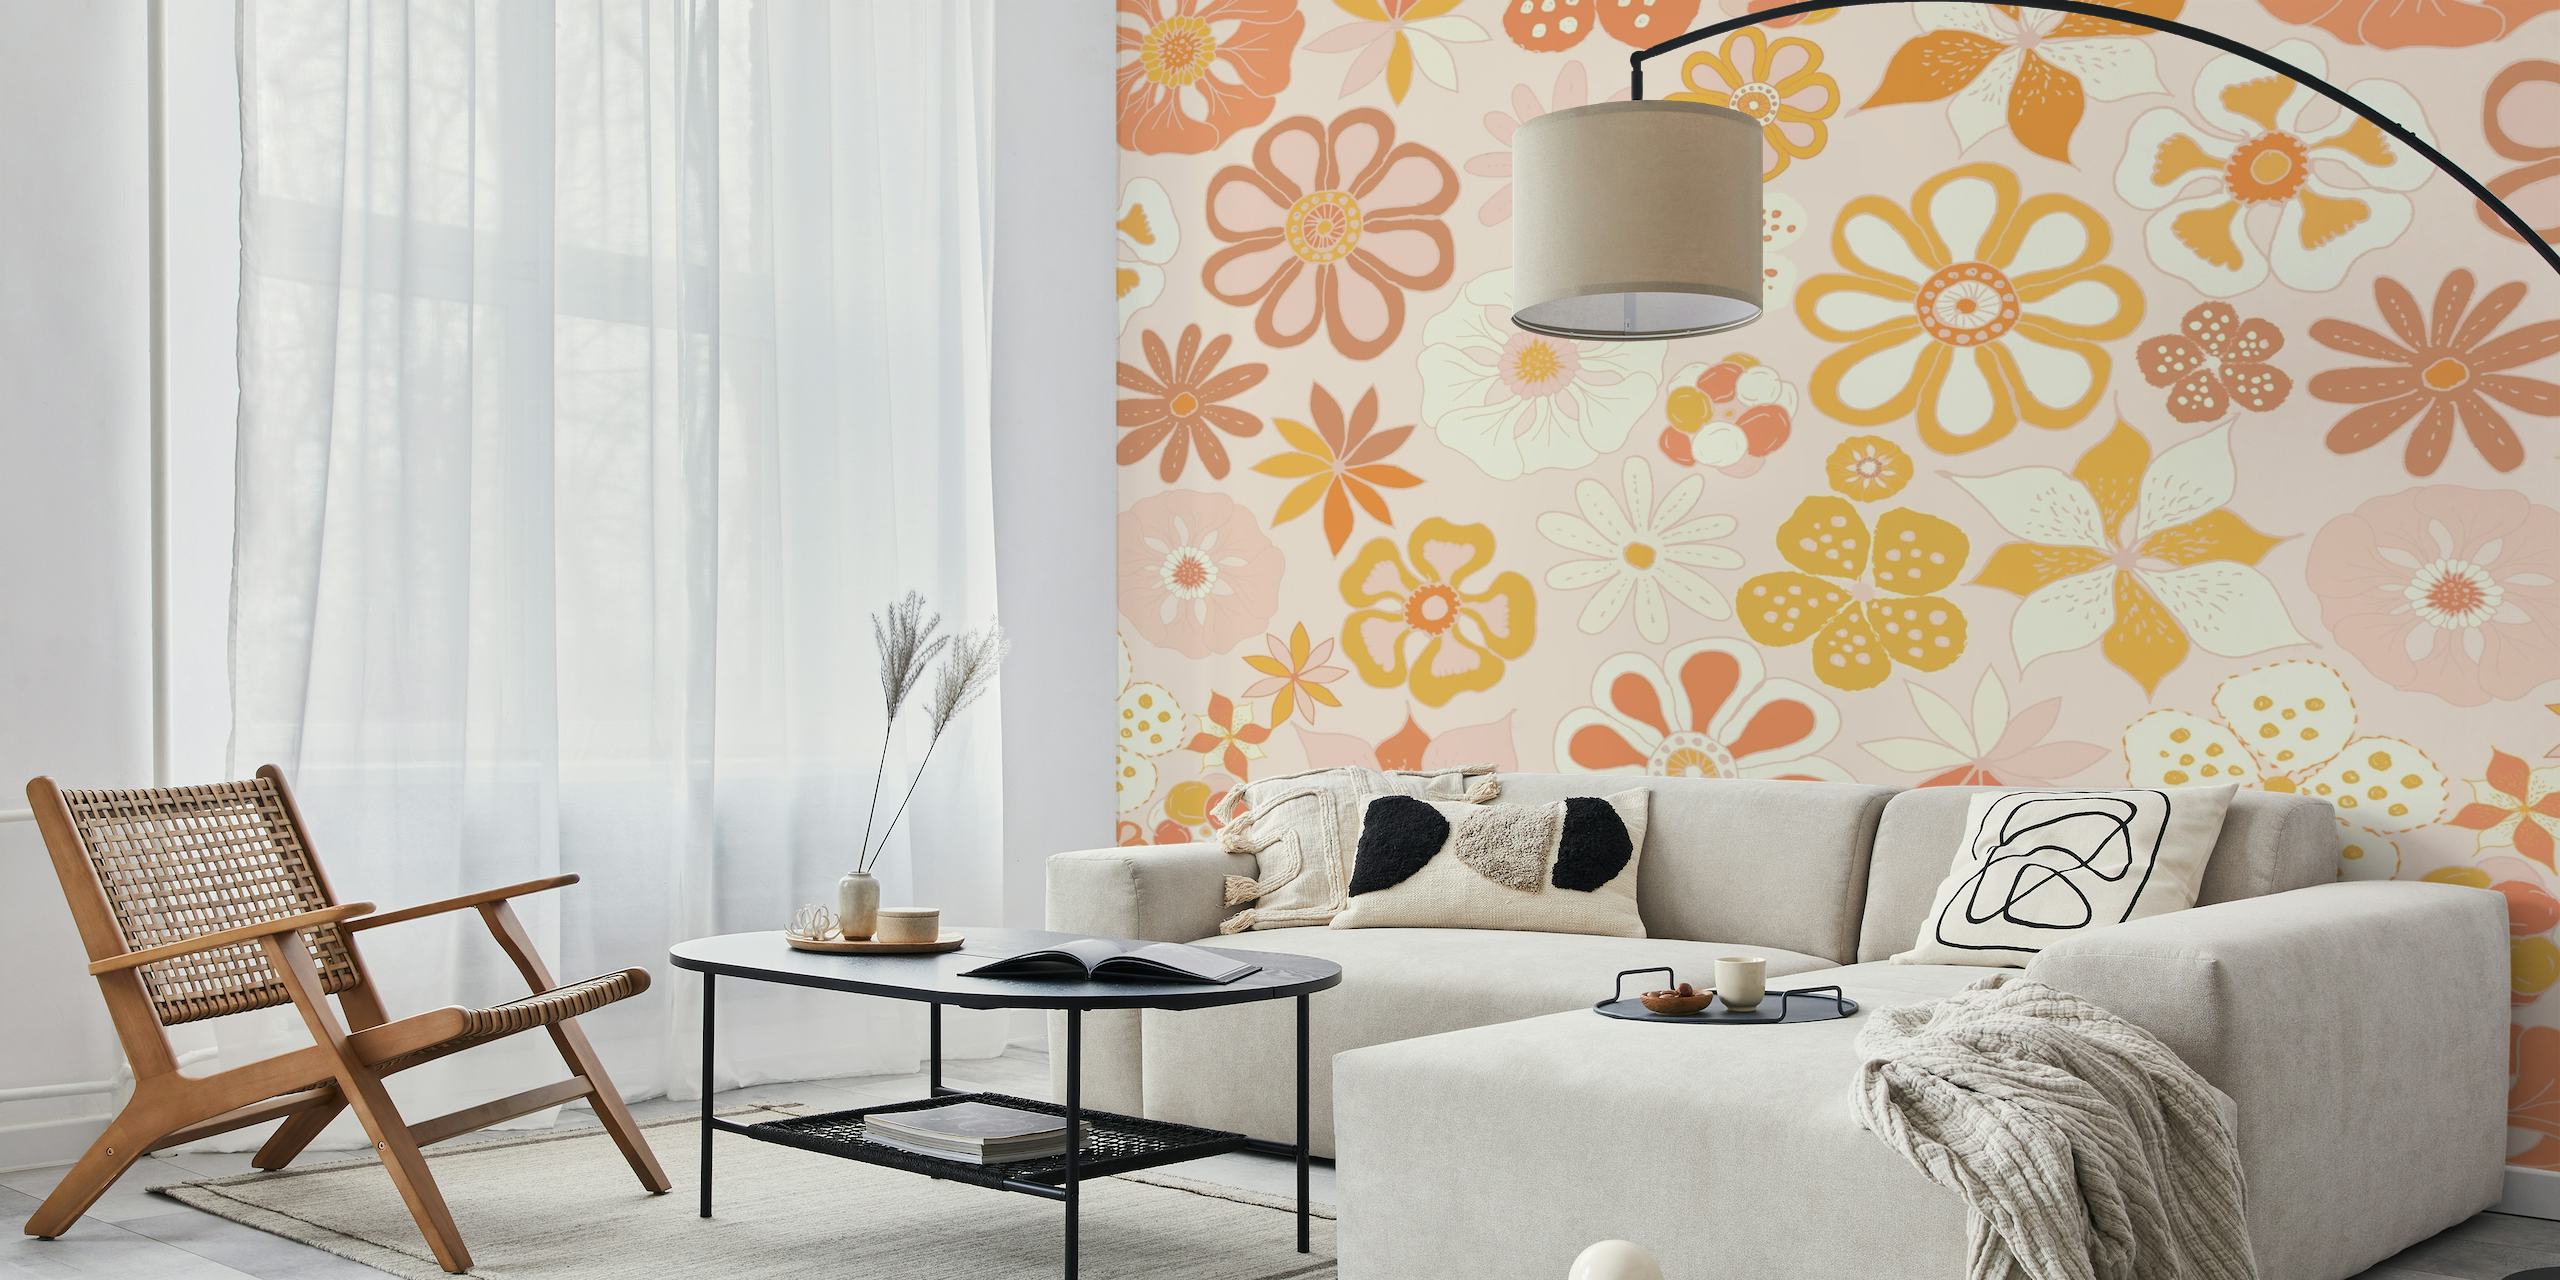 Fotomural con estampado floral en tonos pastel cálidos para decoración del hogar